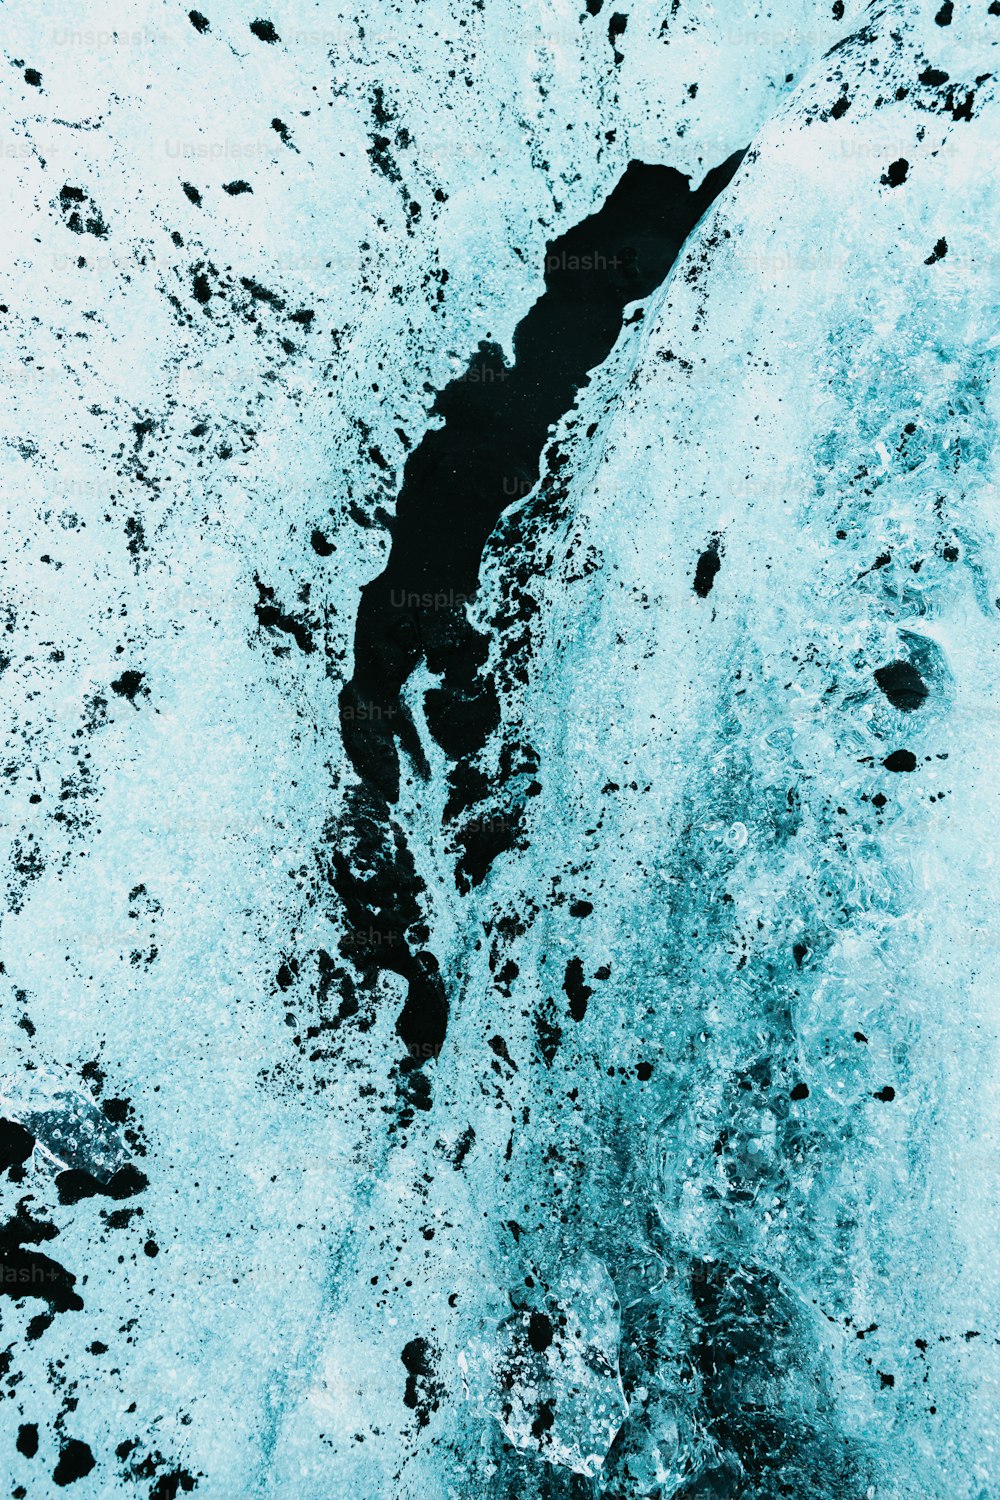 水と氷の白黒写真